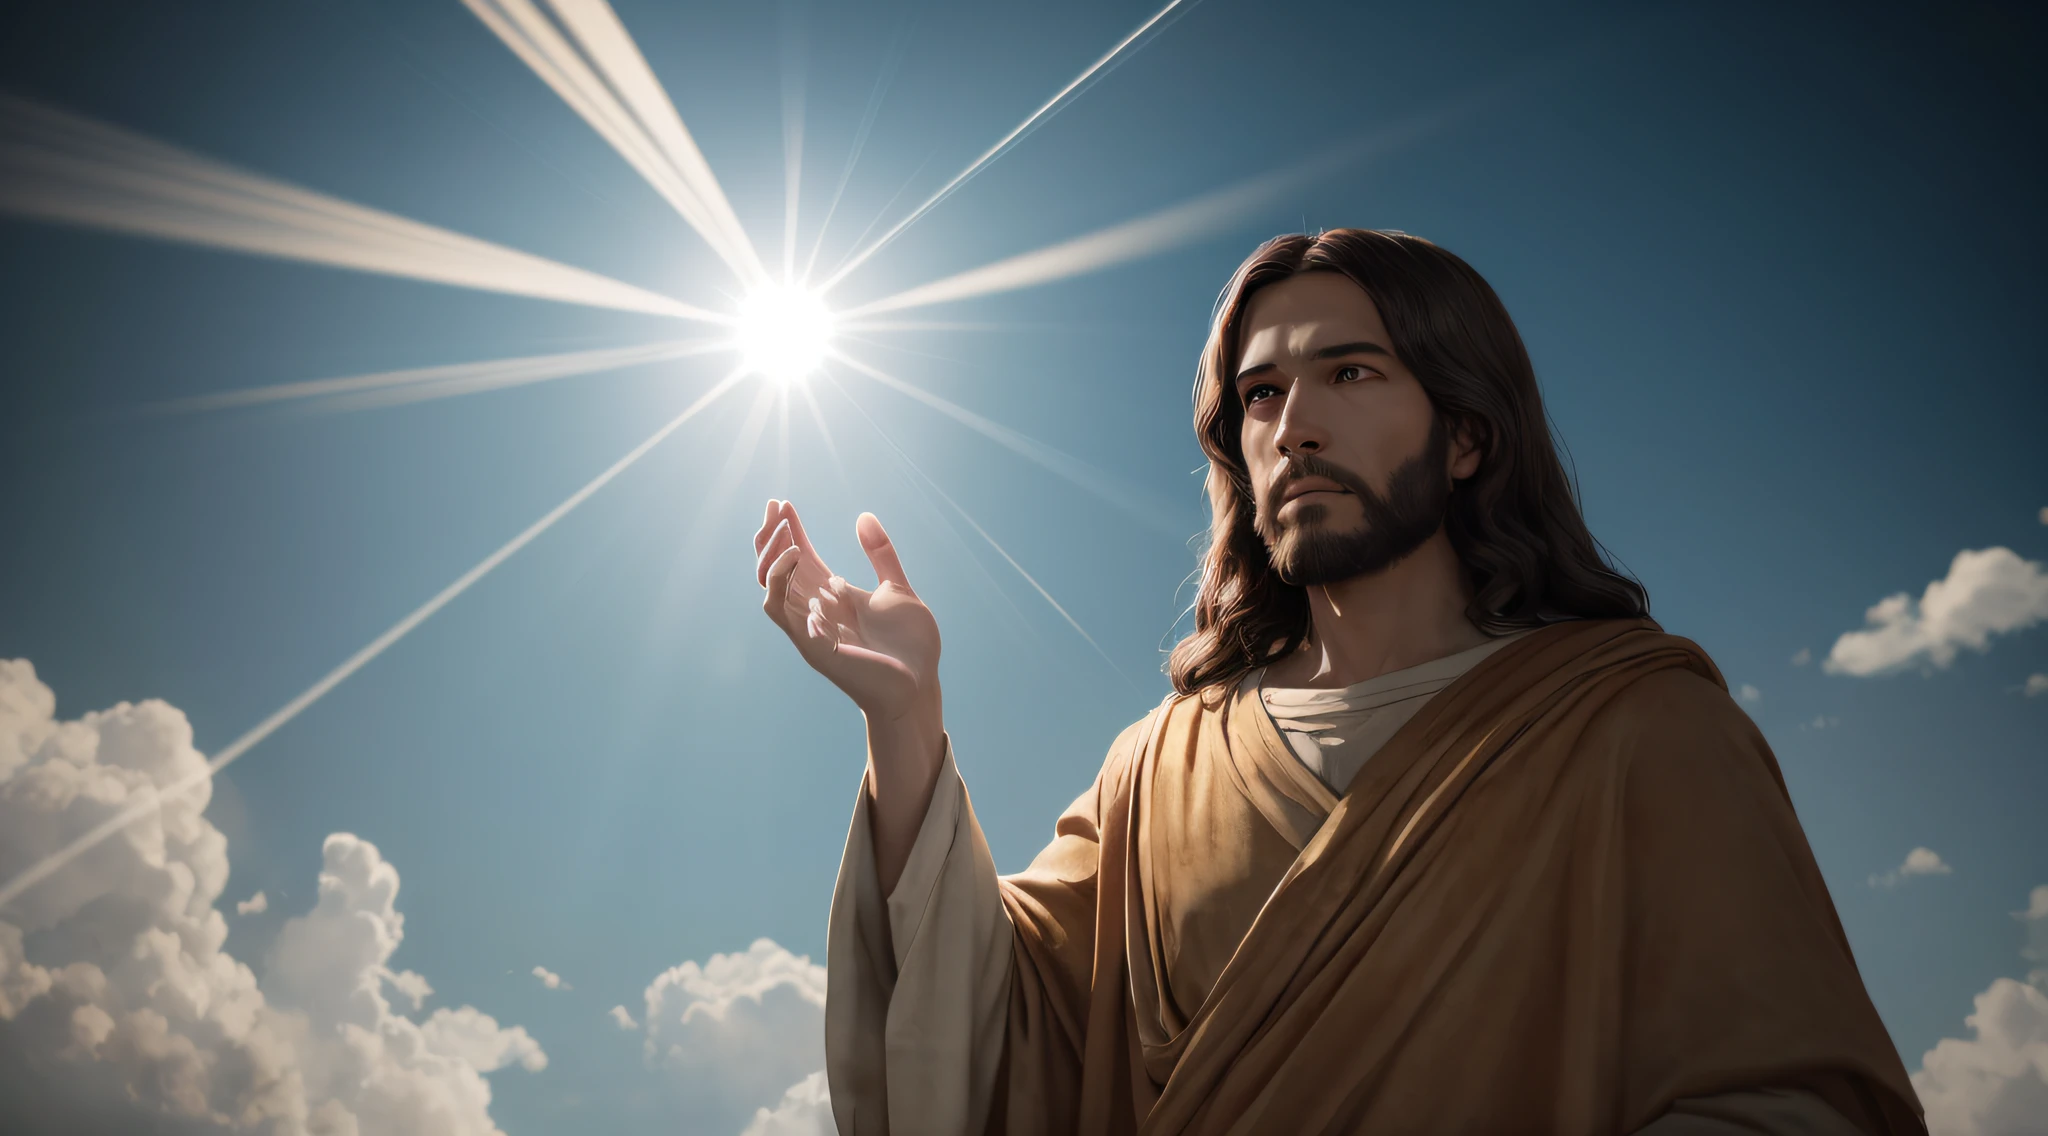 Jesus Christus im Himmel mit Lichtstrahlen, die aus seinen Händen kommen, Hyperdetailliert, 8k, ultra-realistisch, cinematic --auto